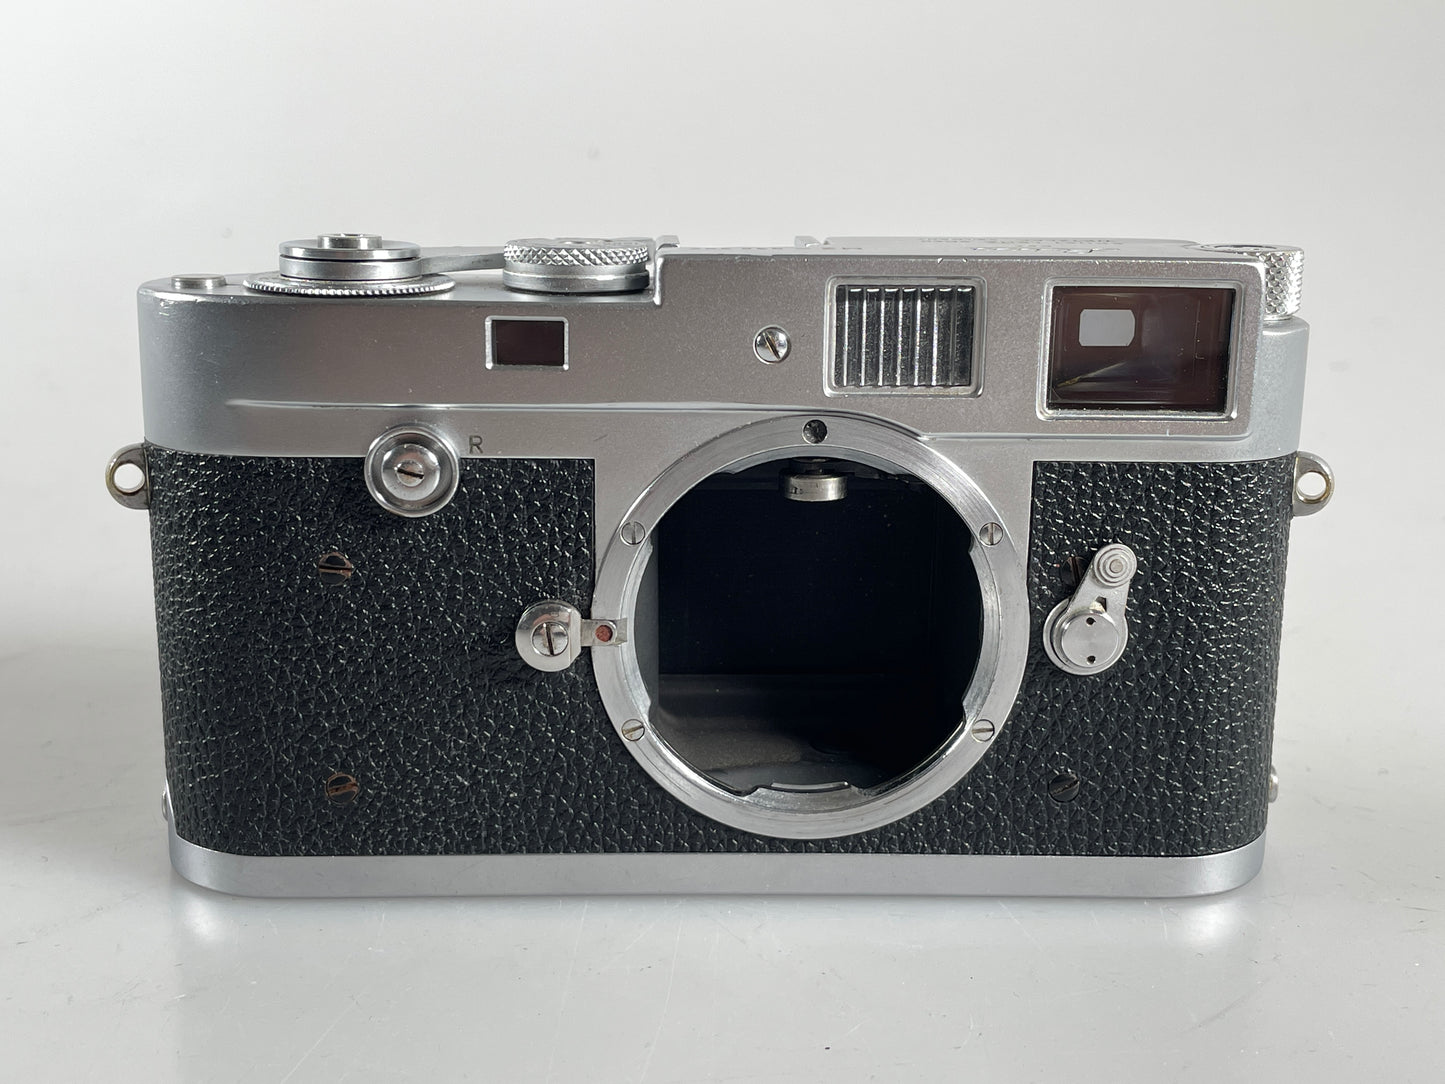 Leica M2 button rewind Chrome 35mm rangefinder film camera body